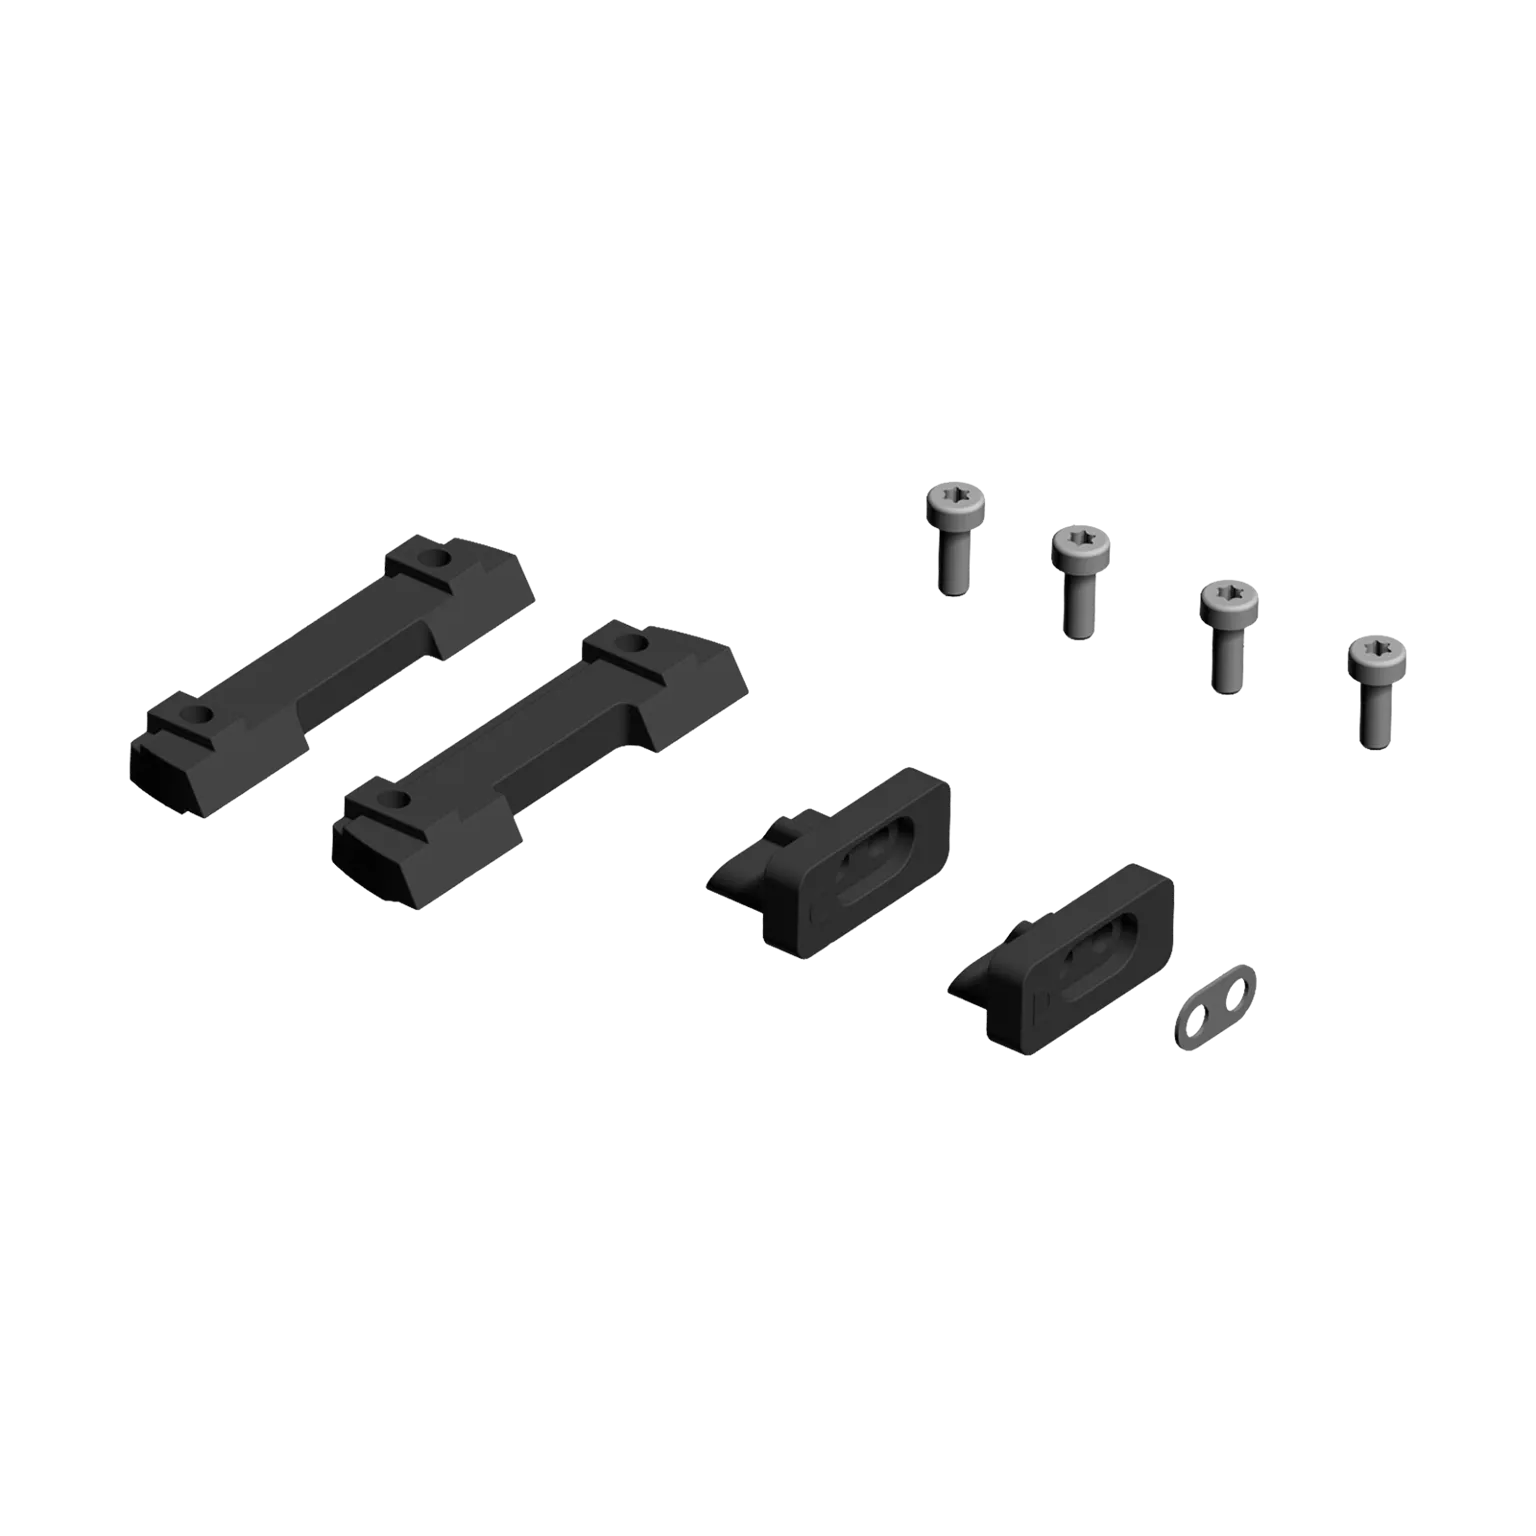 Piastre di base Micro S-1™ per bindella sottile ventilata per fucile a canna liscia Set: A + B + 01 + 02 - 1